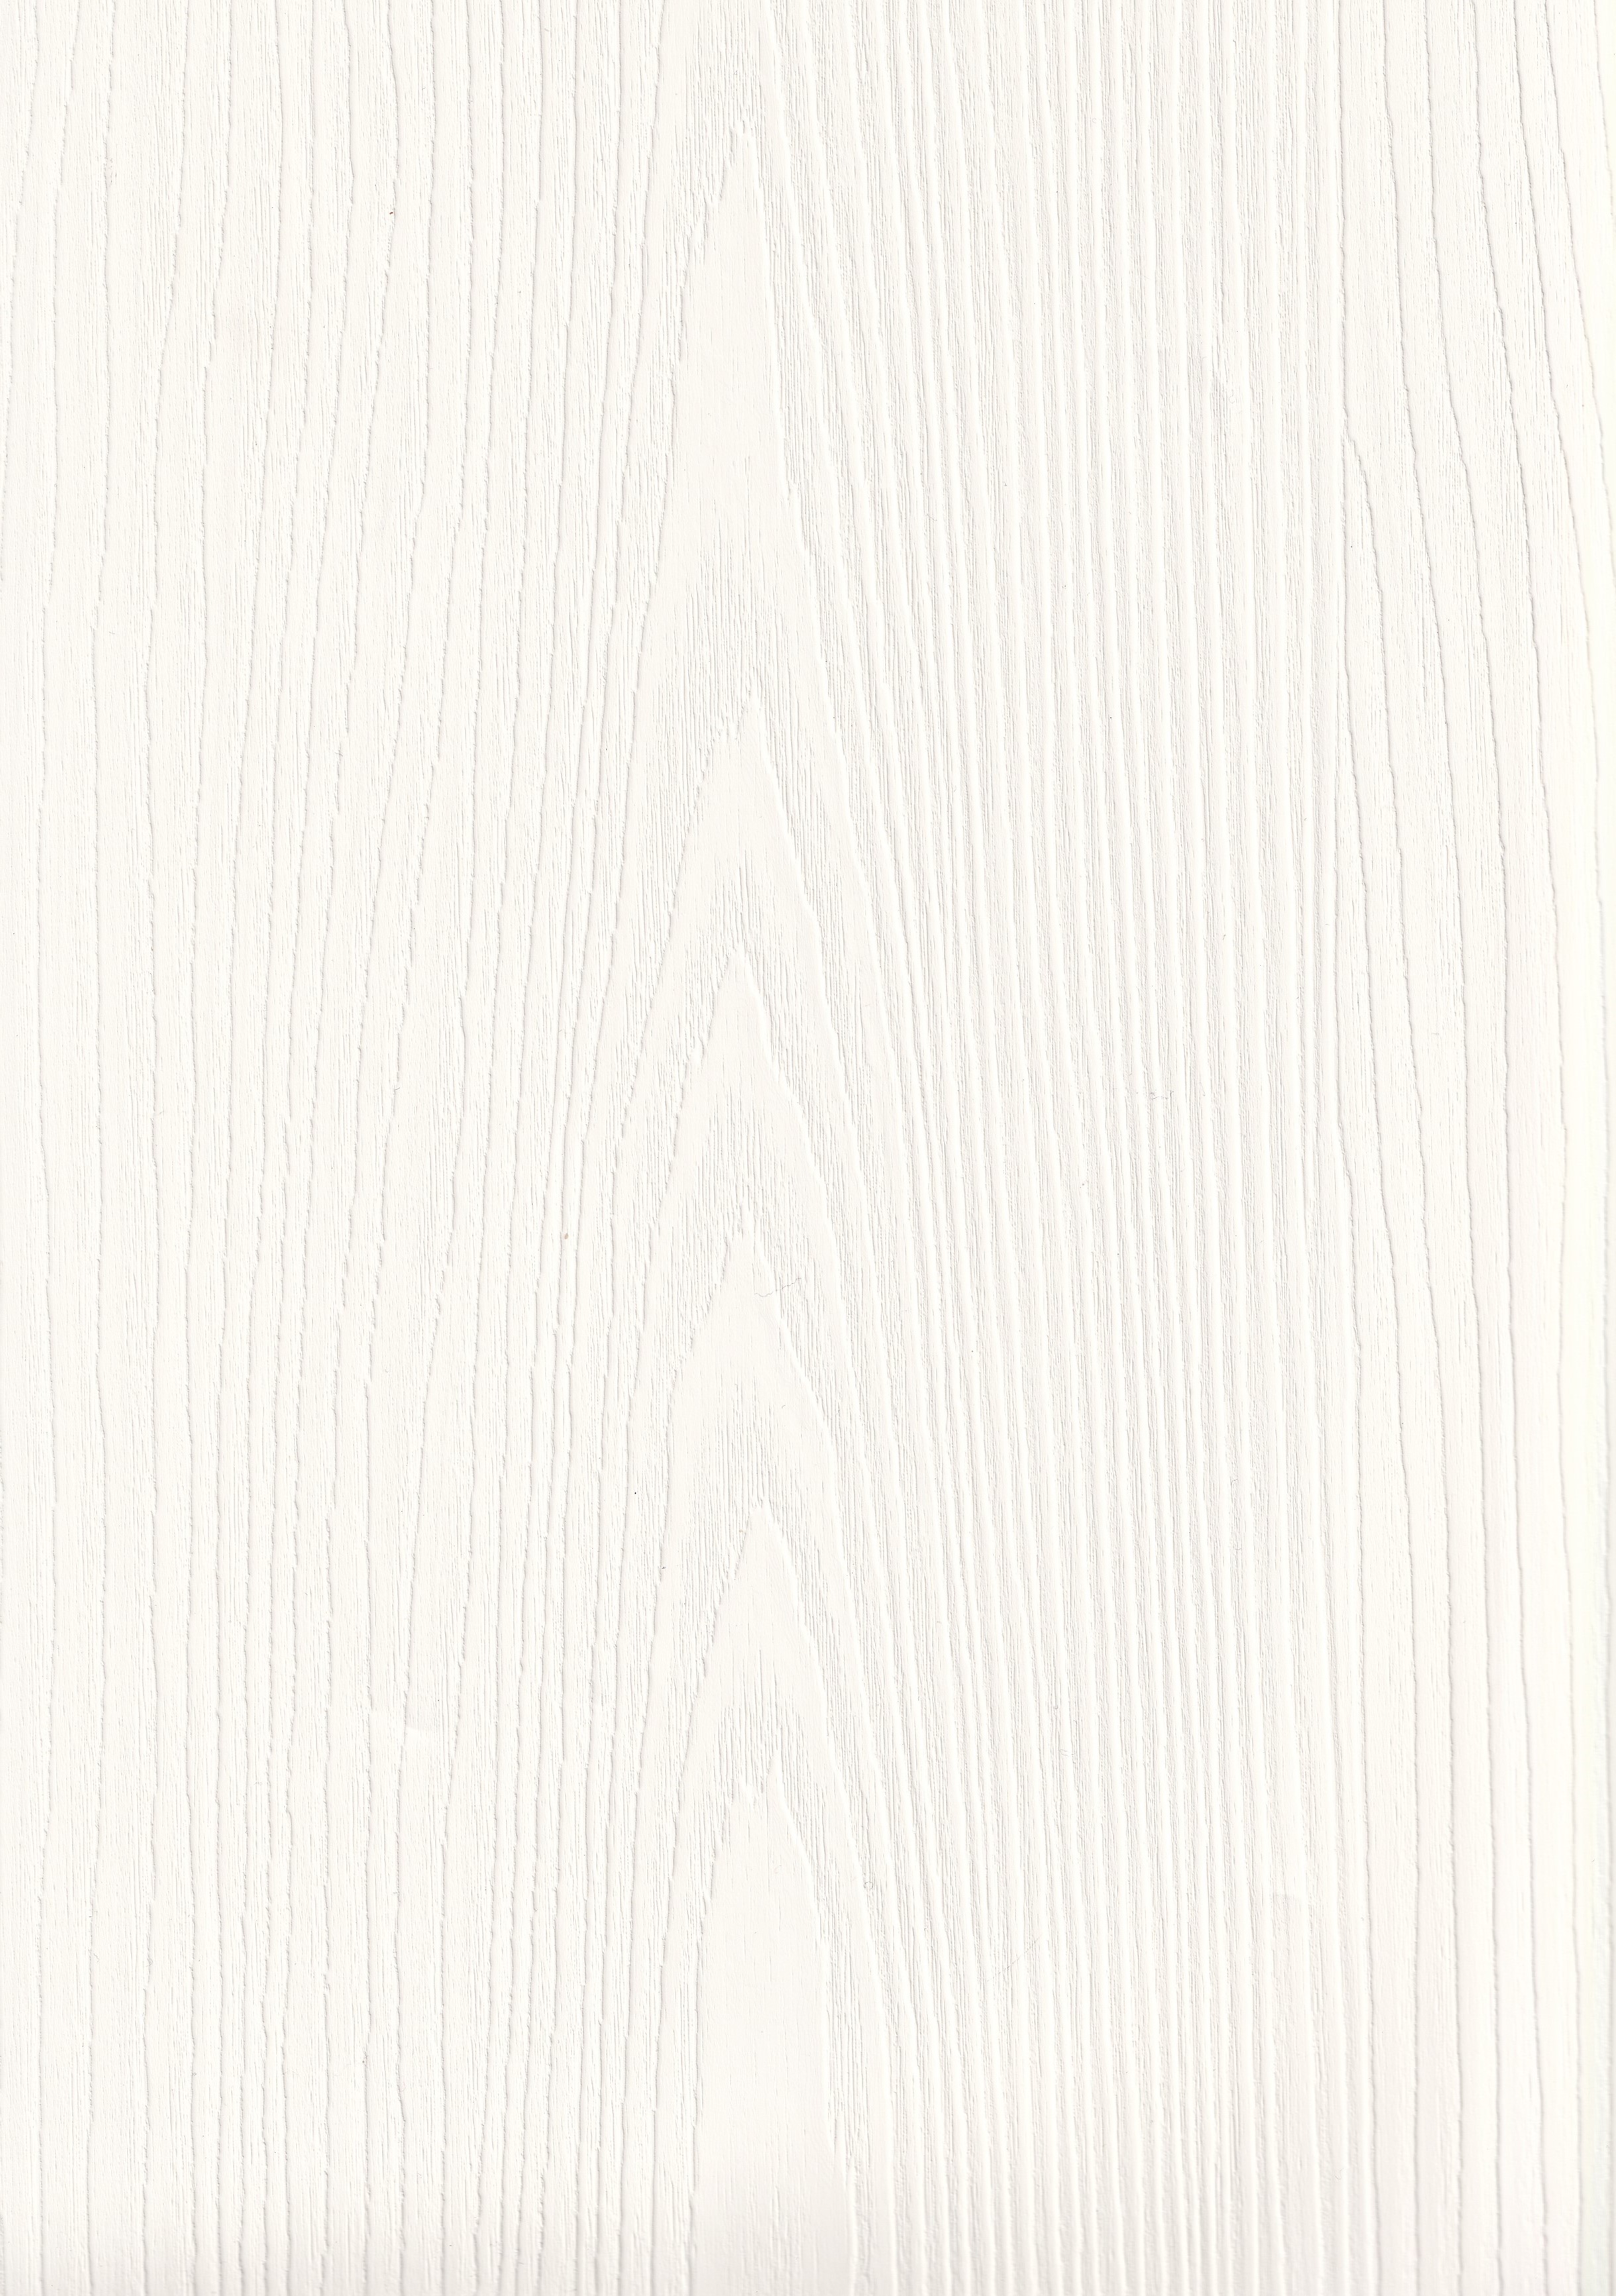 ПВХ пленка АЙВОРИ ВЕНО европейского качества для мебели и дверей от ЛАМИС | Каталог ПВХ пленок MULTIMA by IMAWELL  | Однотонная ПВХ пленка с древесным тиснением 